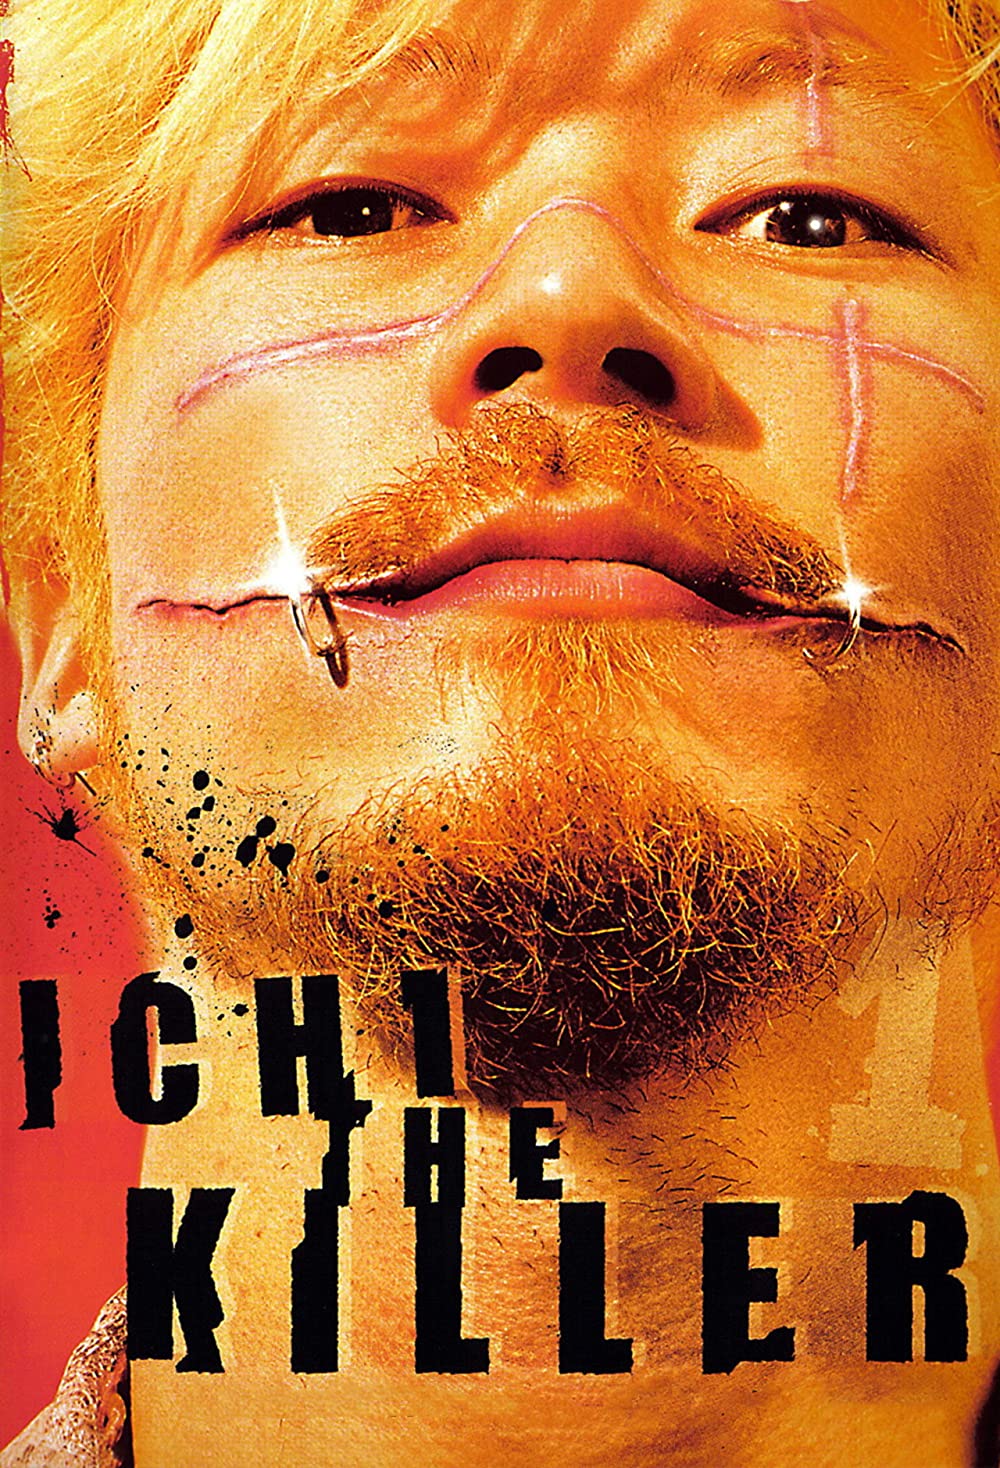 Filmbeschreibung zu Ichi the Killer (OV)